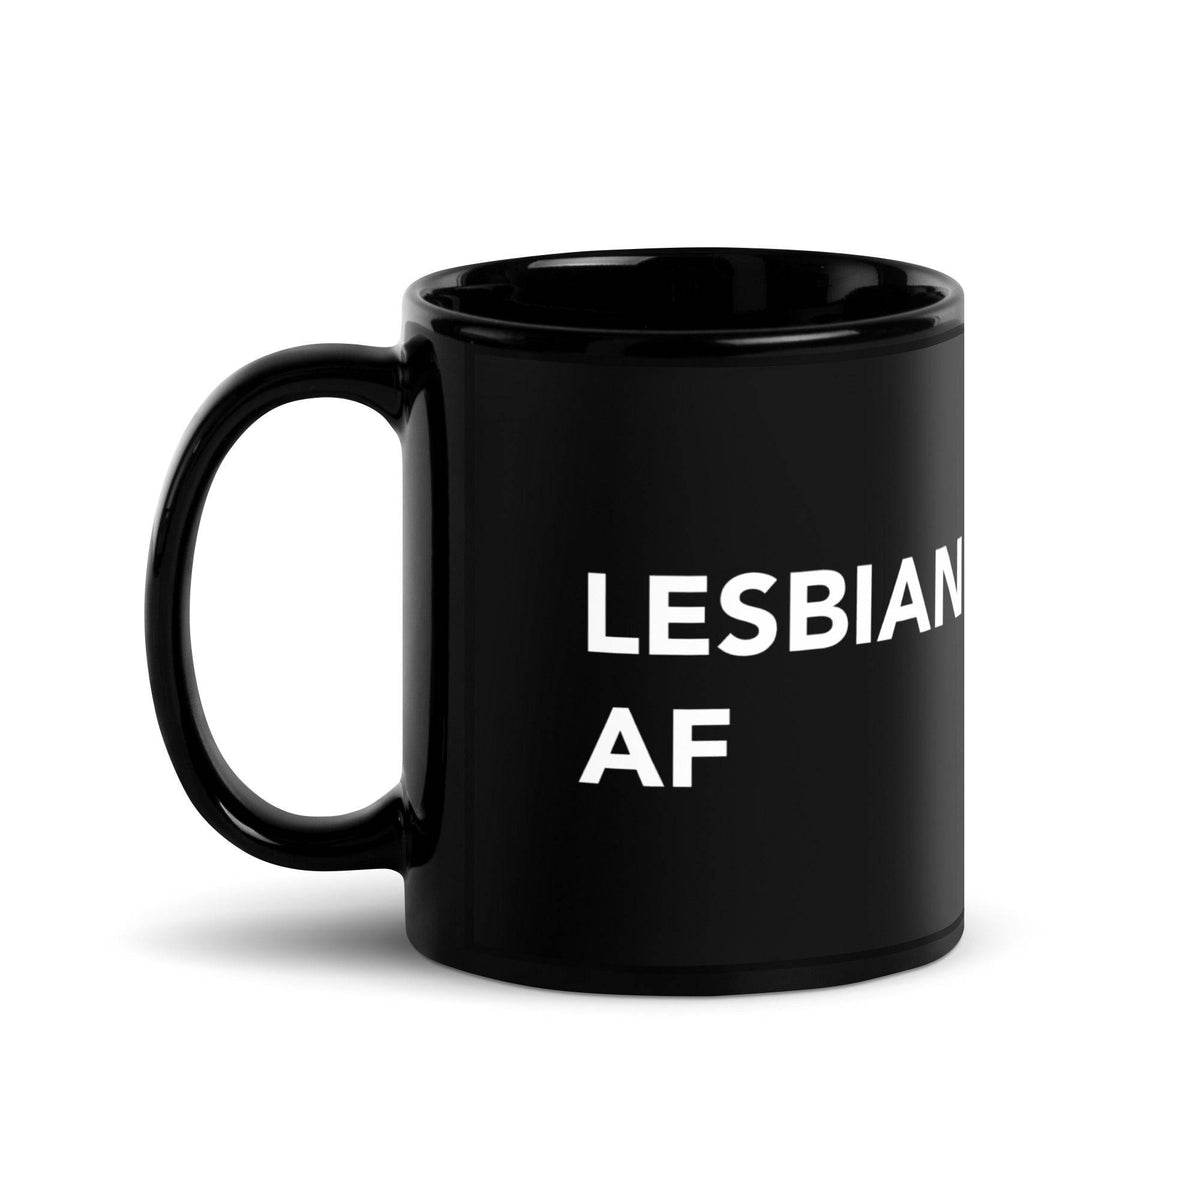 Lesbian Af Black Glossy Mug